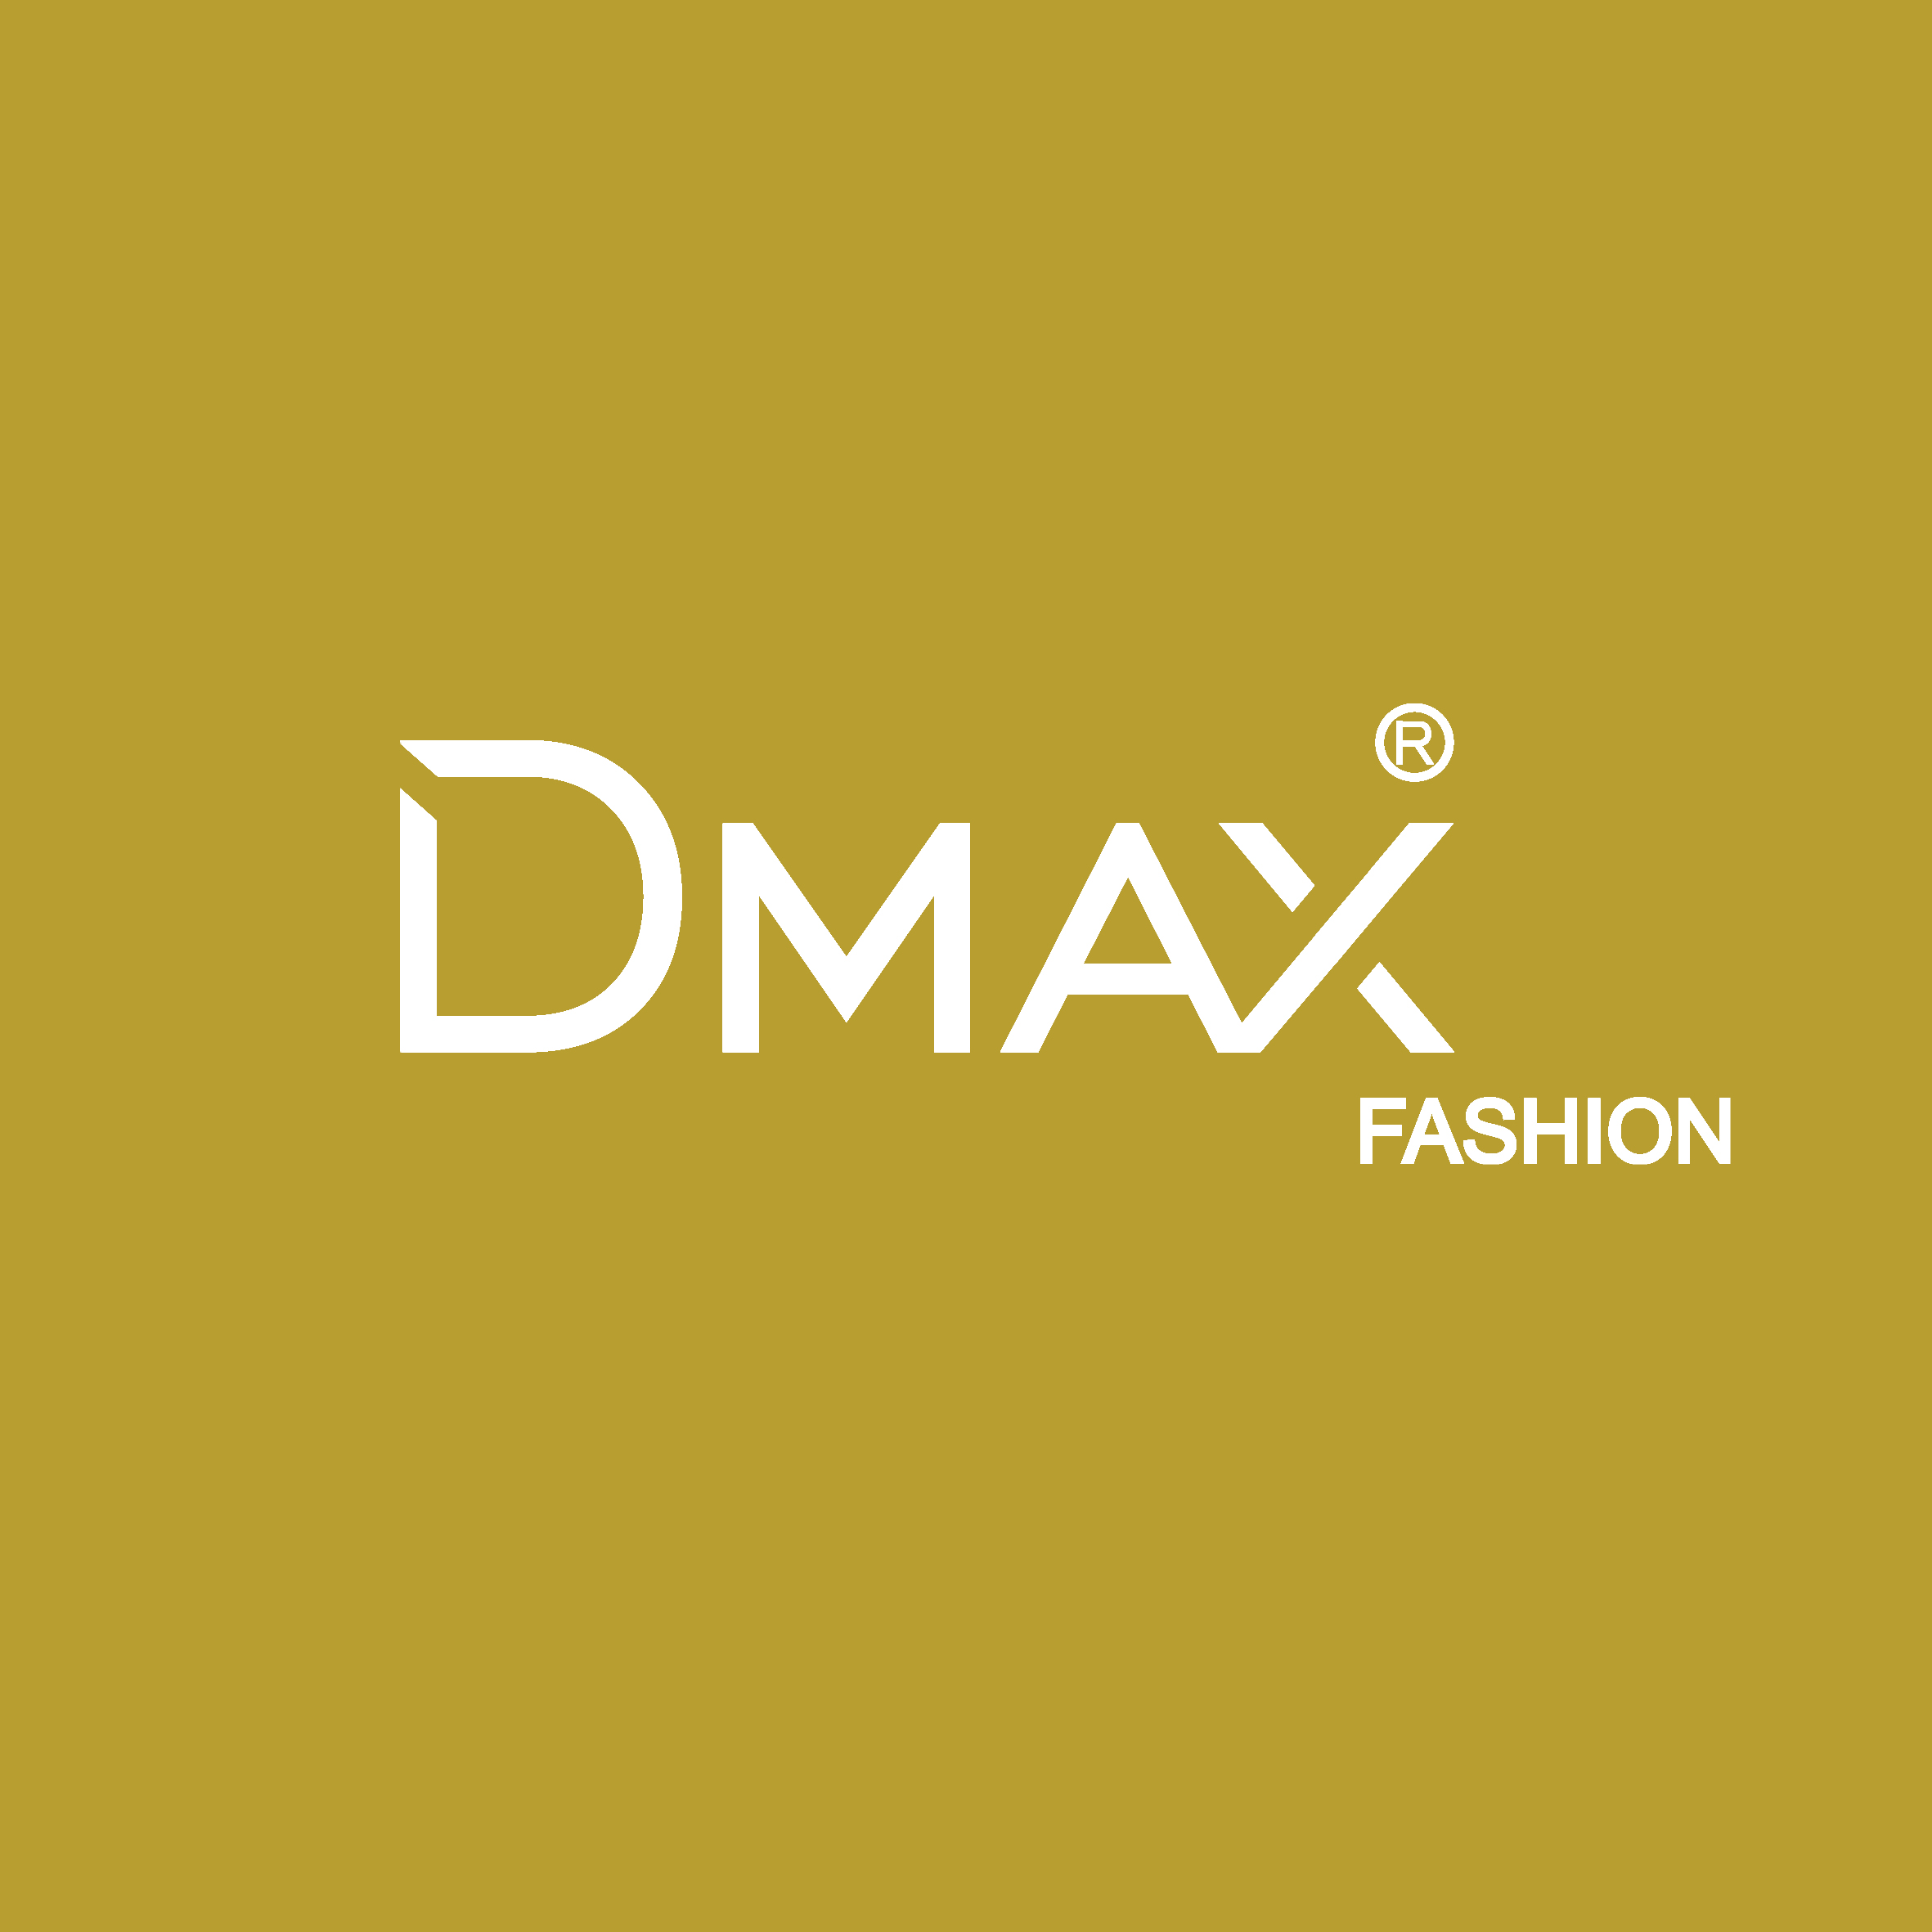 Dmax fashion